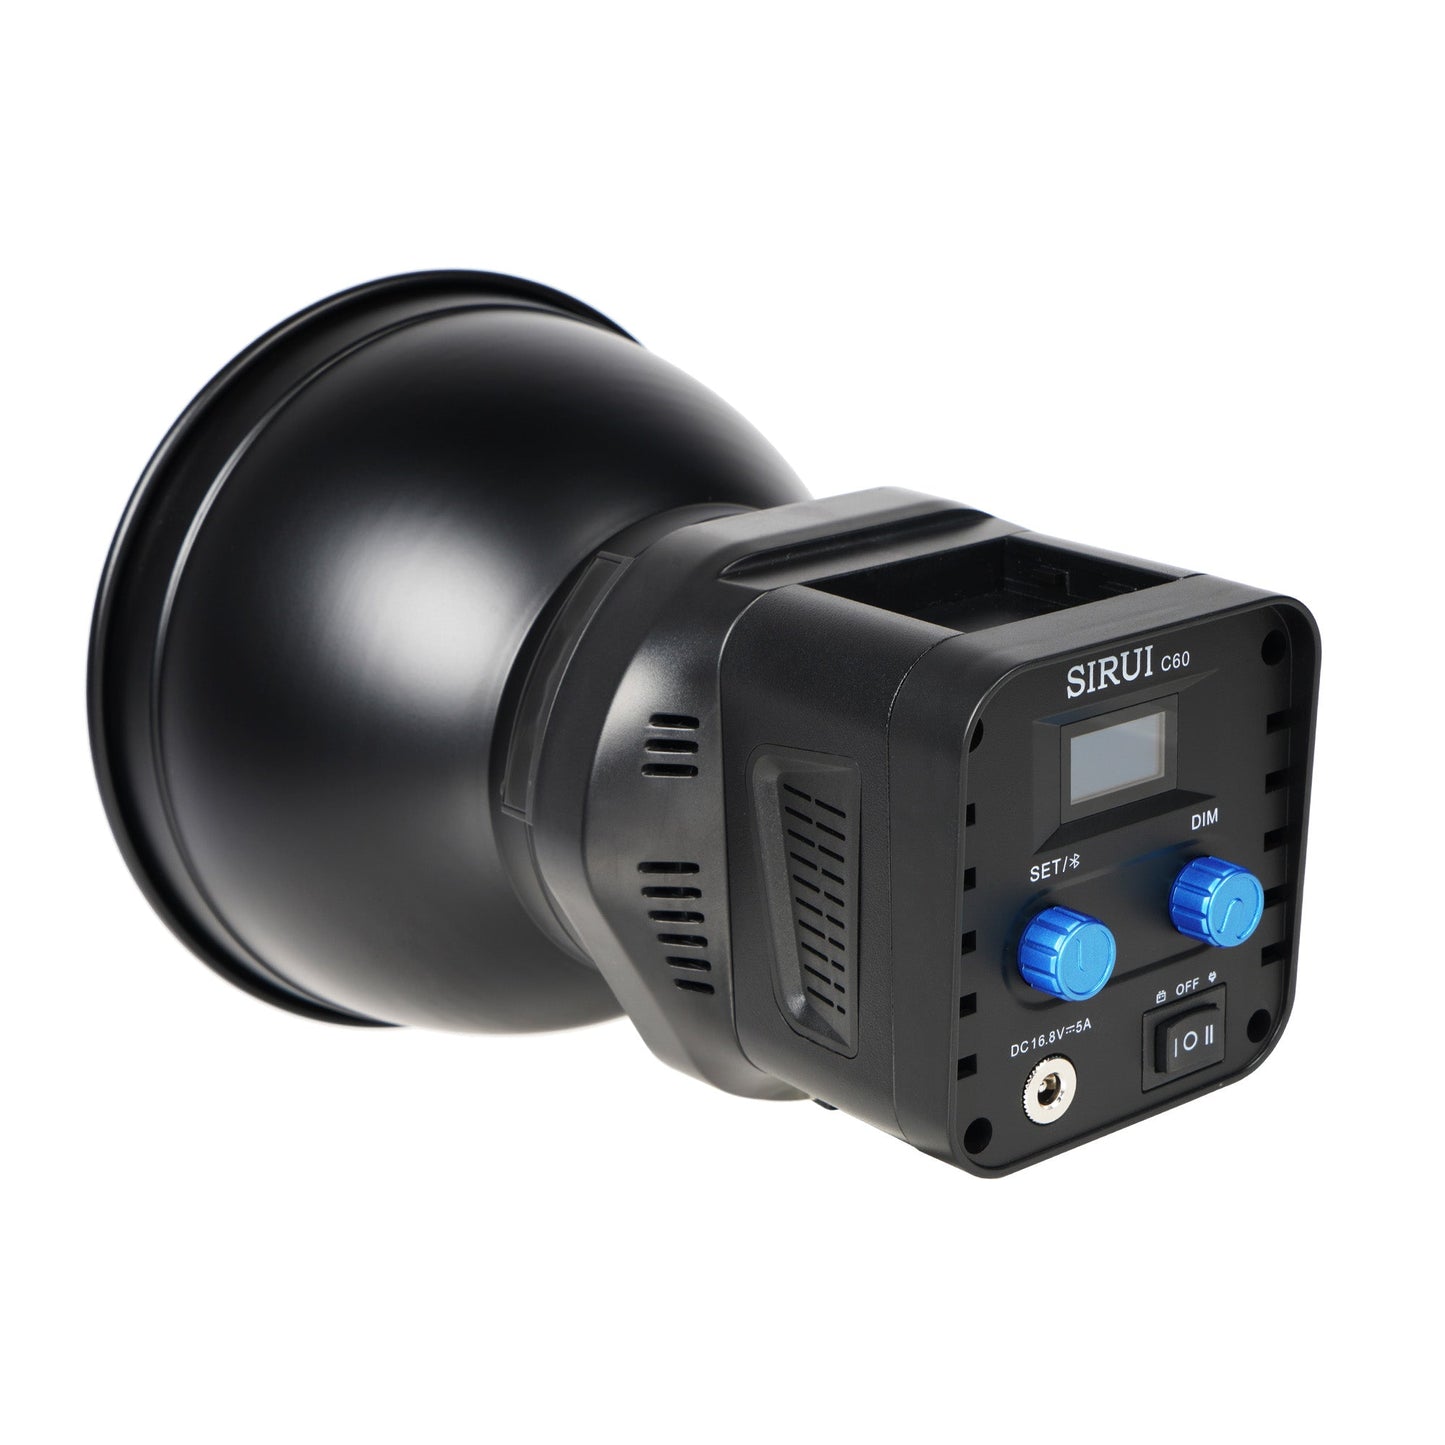 SIRUI C60R LED-Dauerlicht RGB-360m-Color 60W - superleise 20dB - Foto- + Videoleuchte